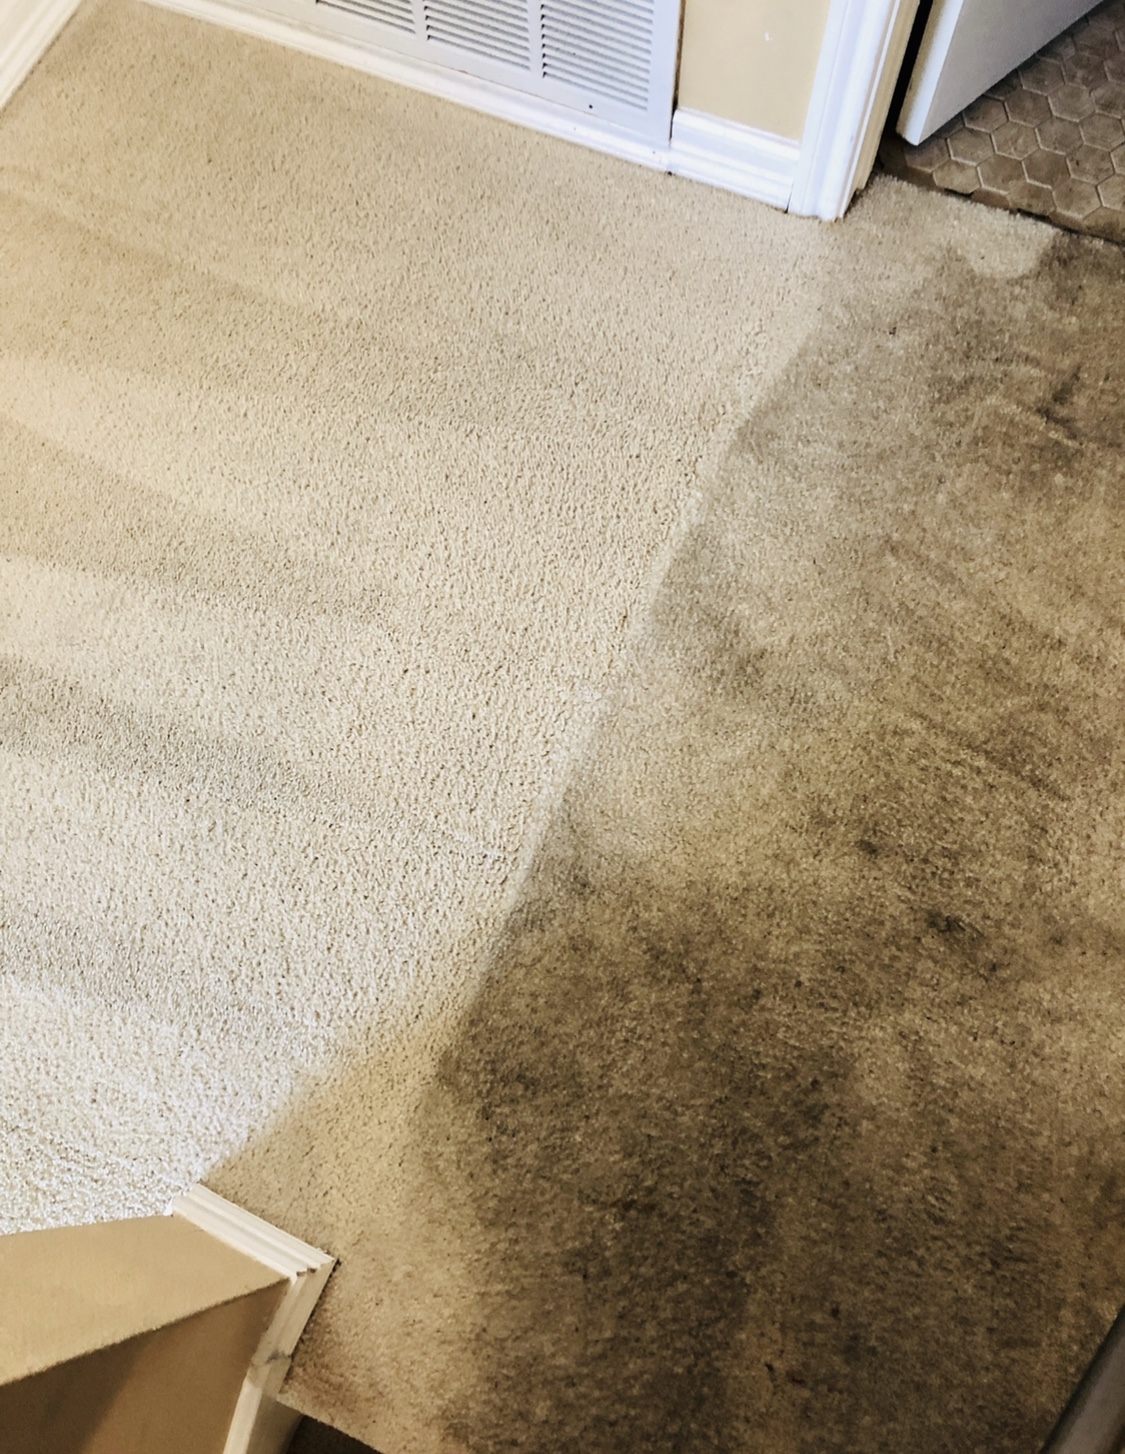 carpet cleaning san antonio